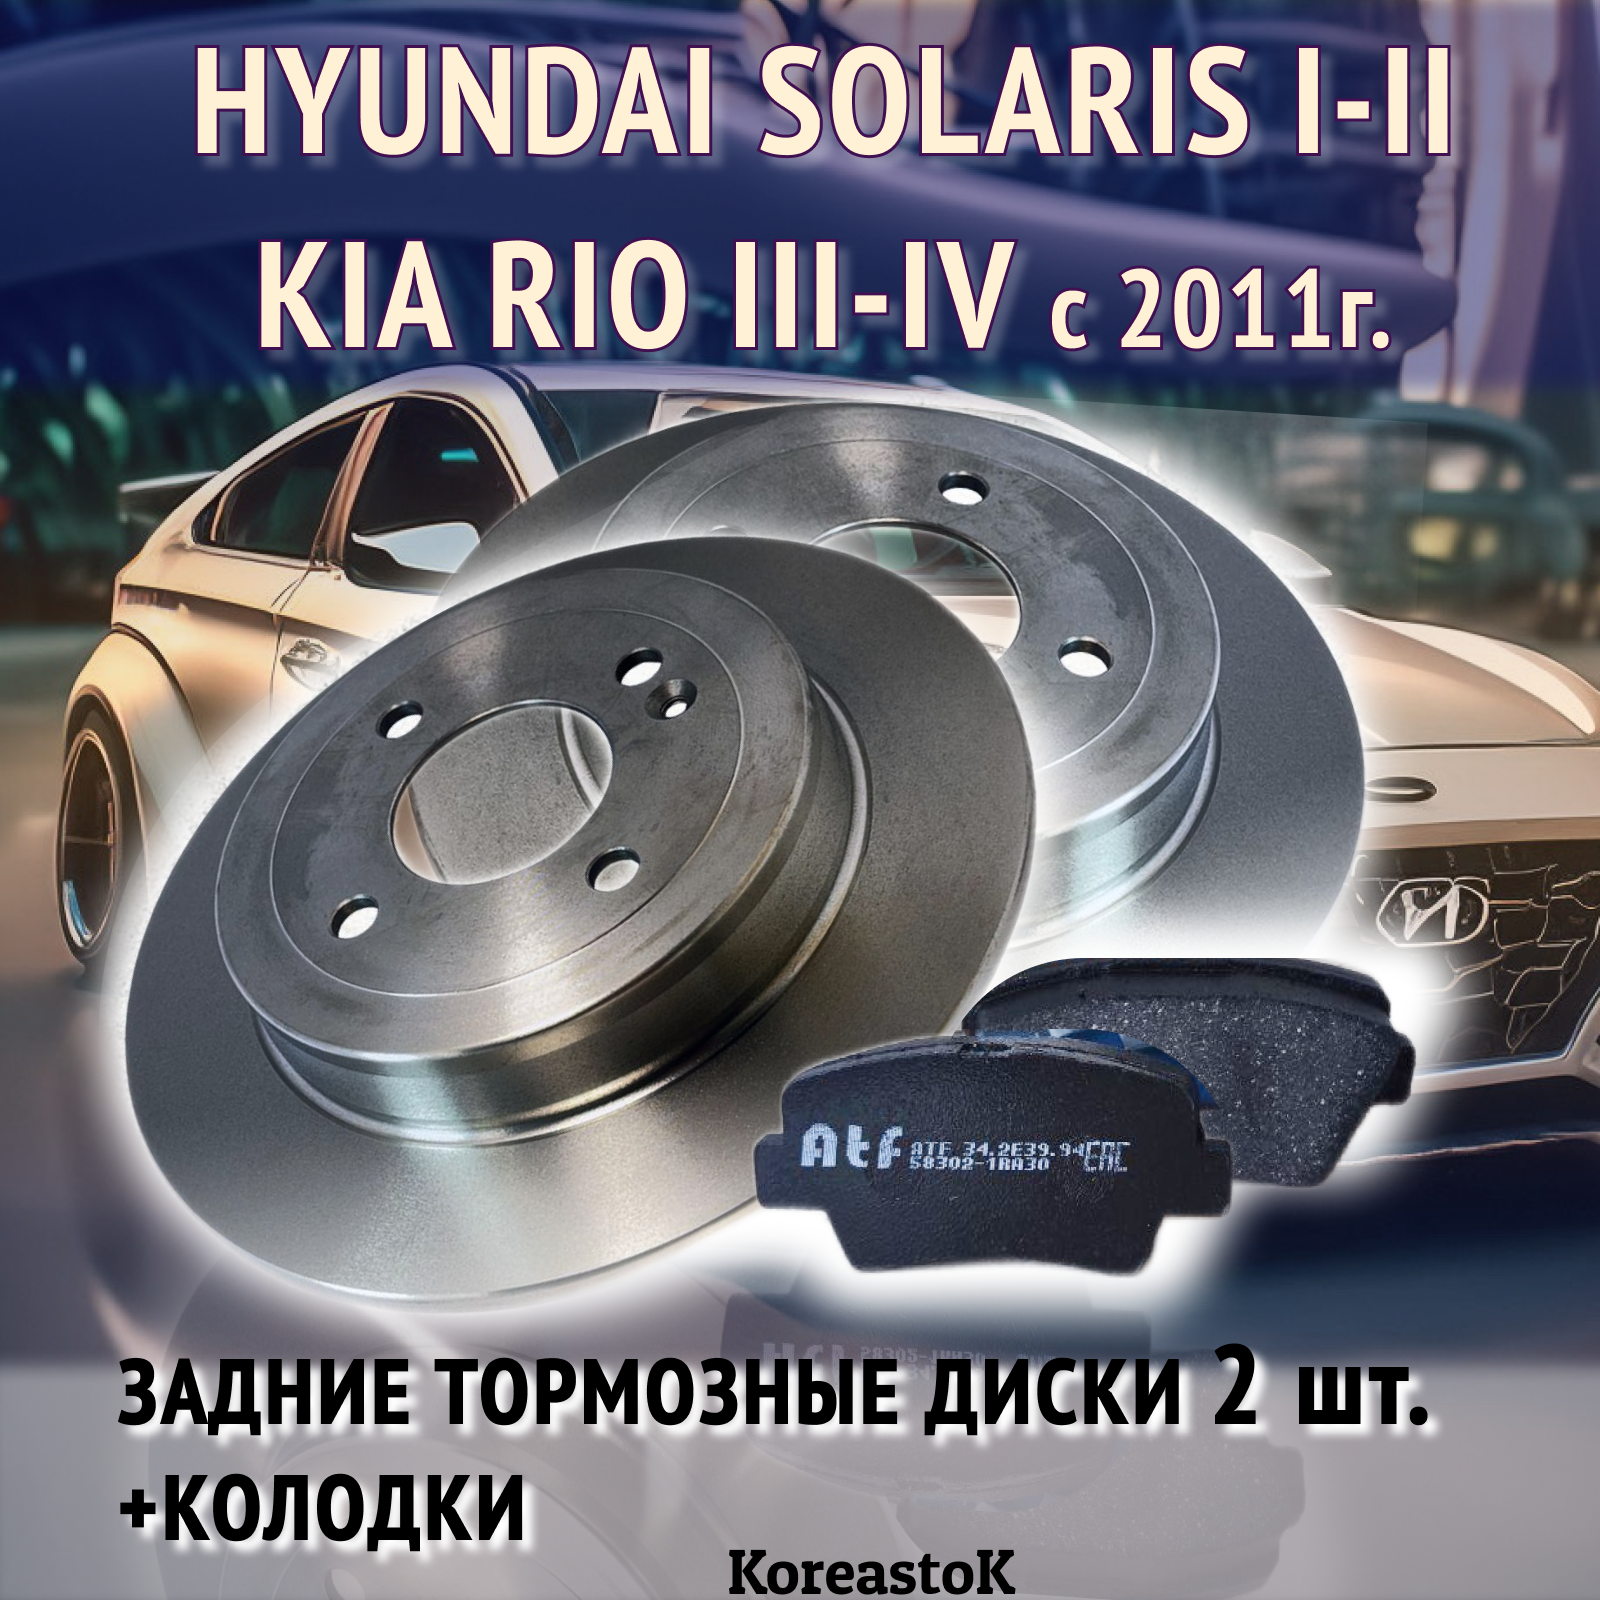 Тормозные диски задние (2 шт) и колодки для Hyundai Solaris и Kia Rio (с 2011г. в.)